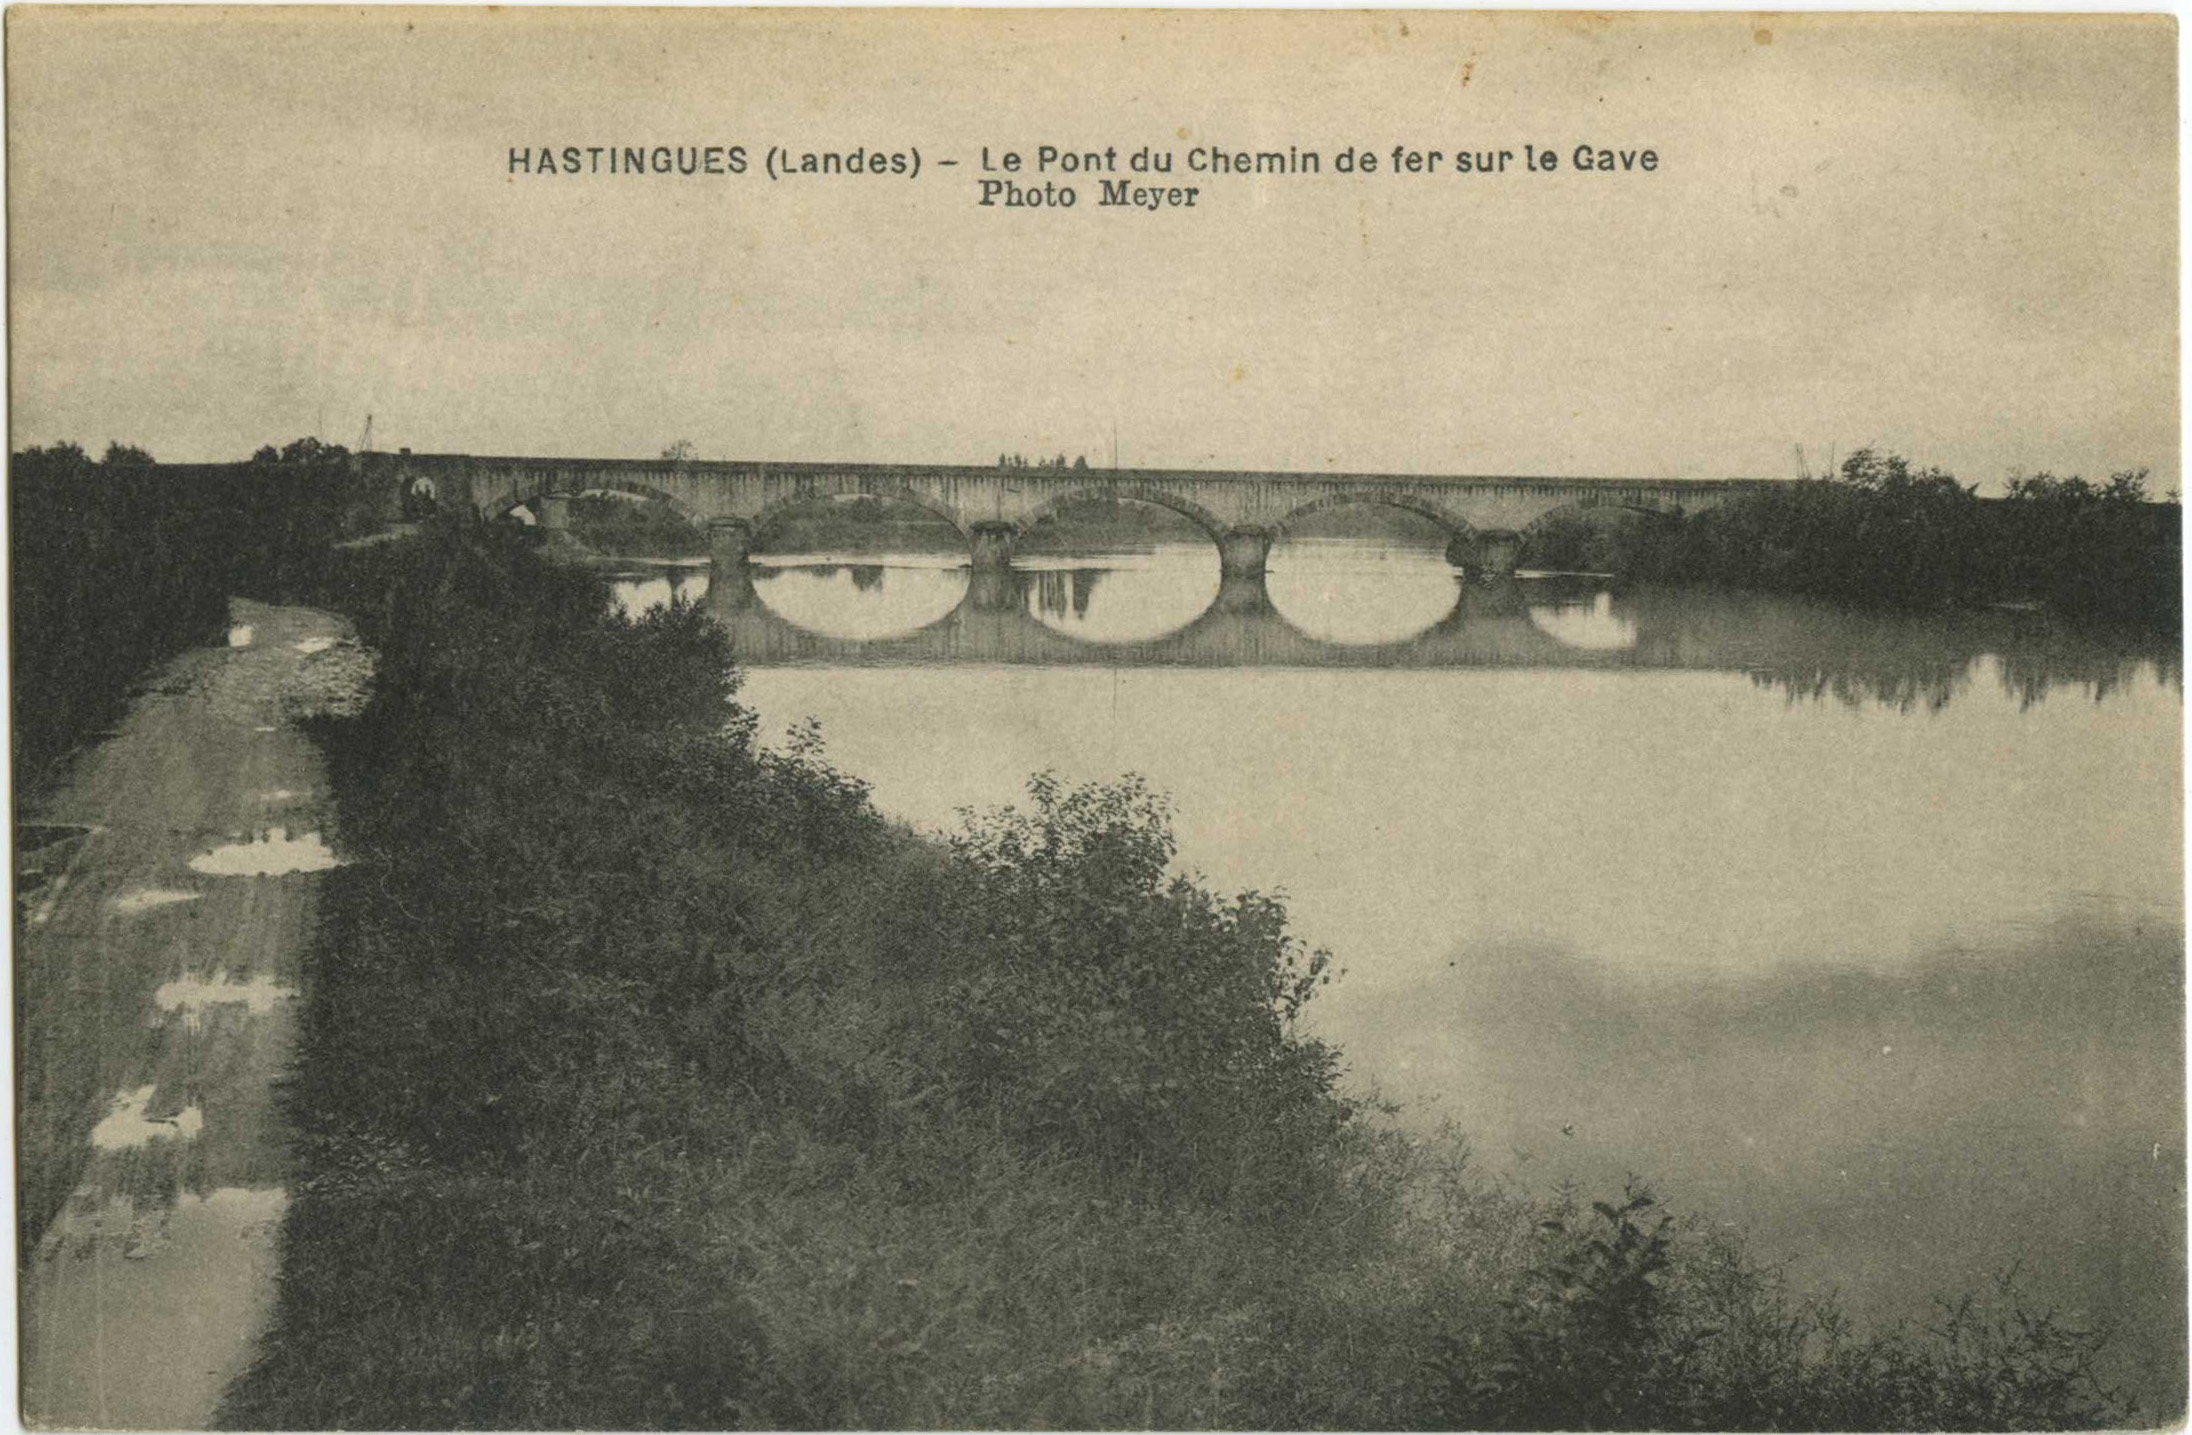 Hastingues - Le Pont du Chemin de fer sur le Gave